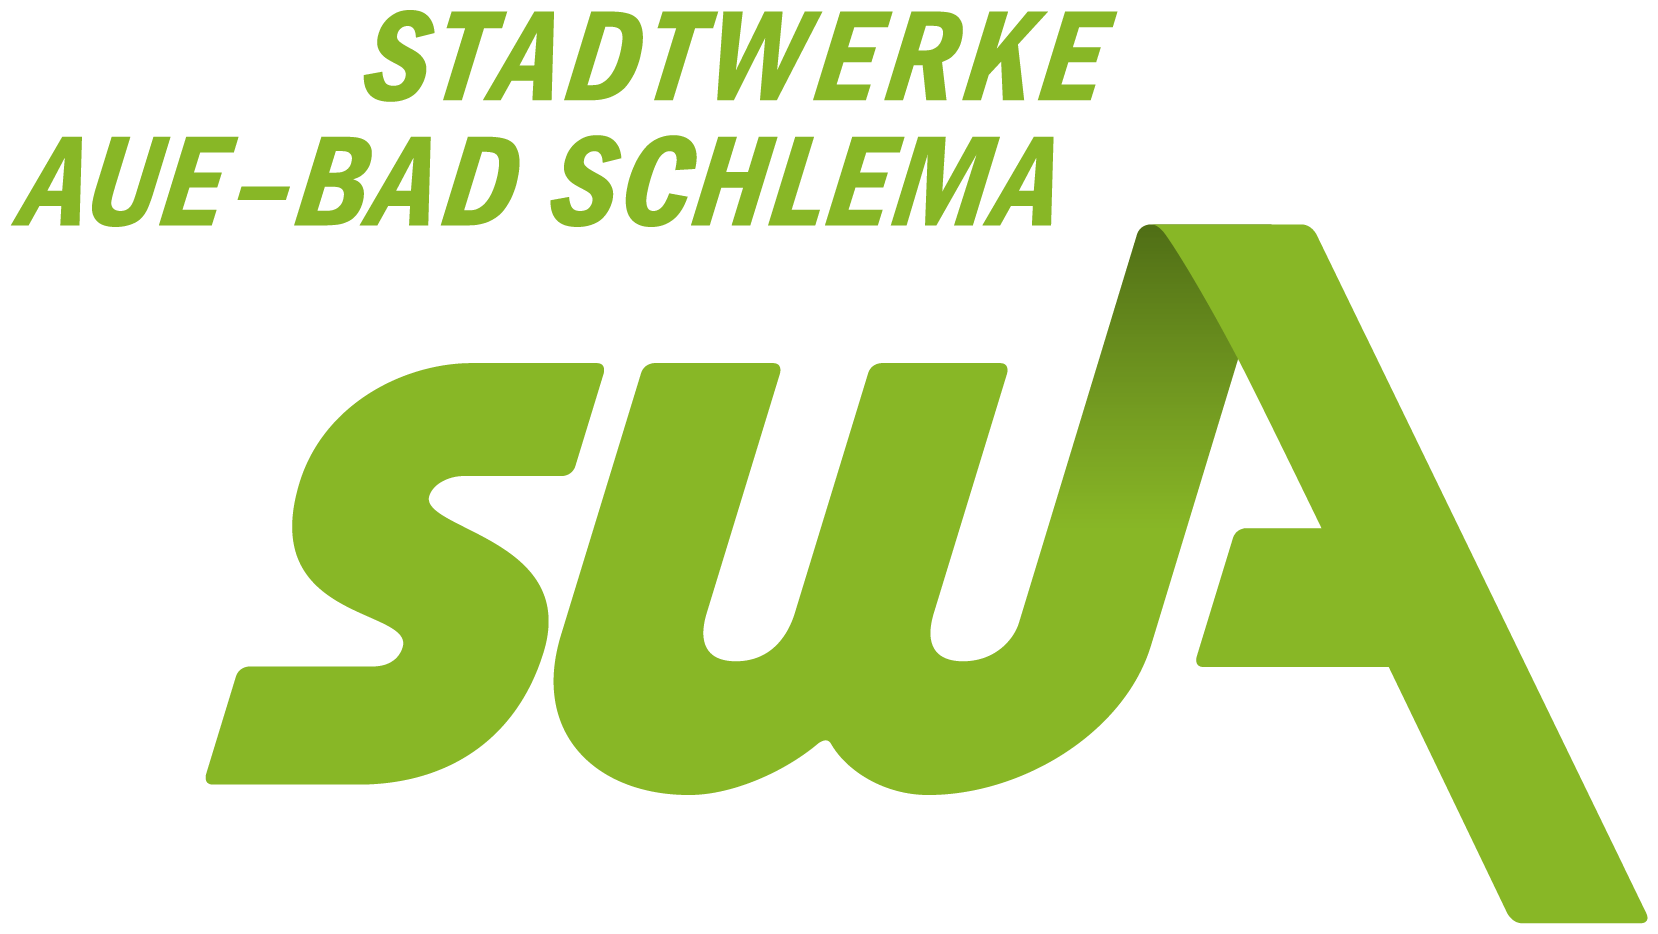 Stadtwerke Aue-Bad Schlema GmbH